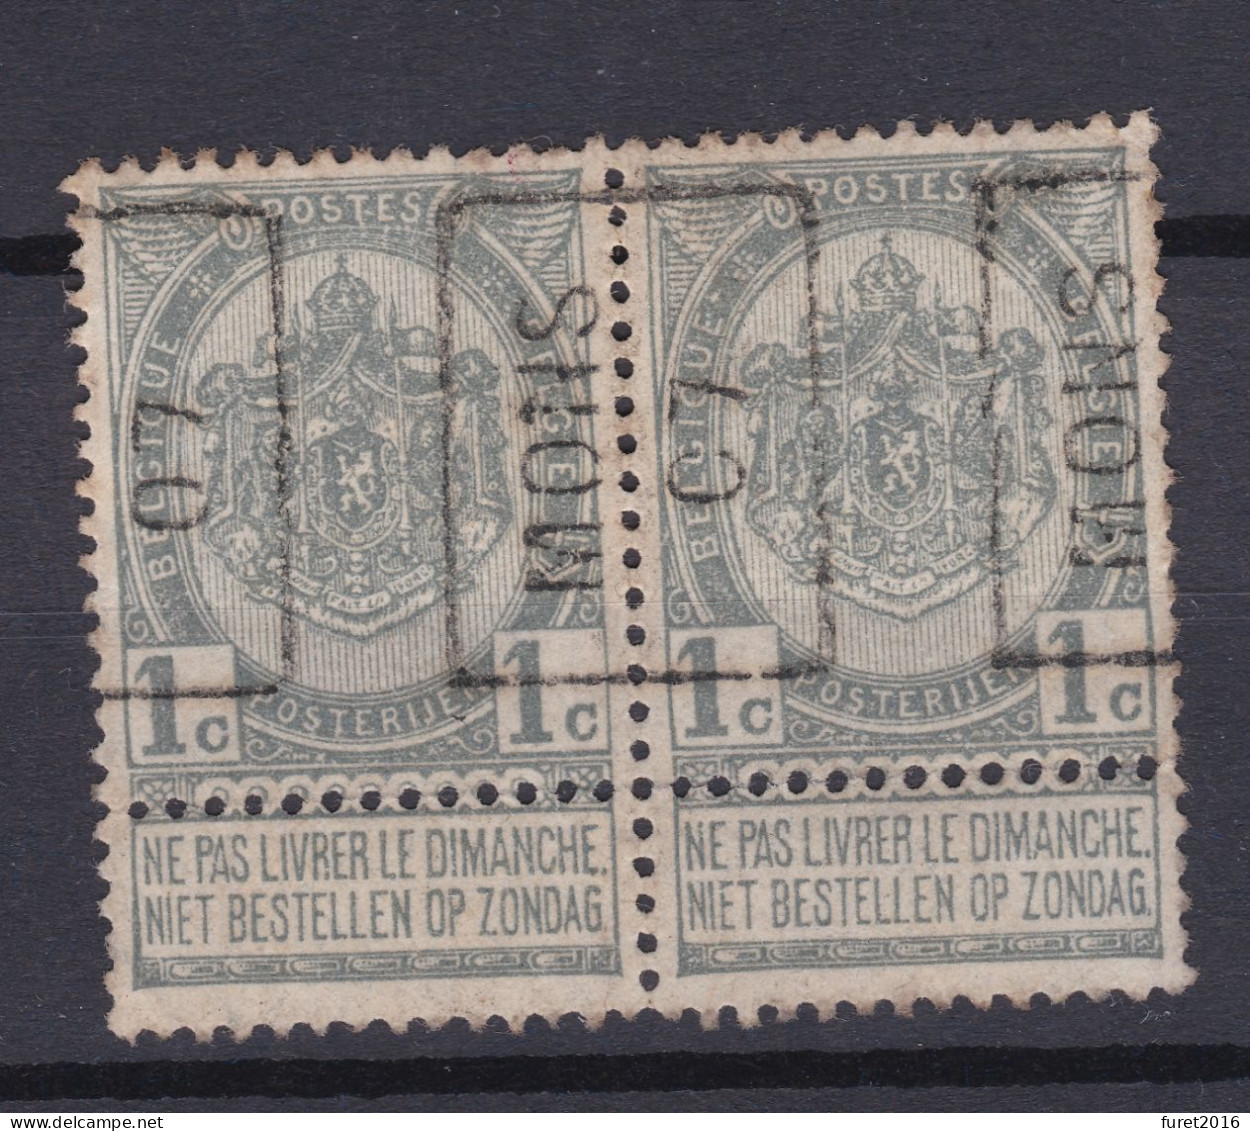 N° 53 PREO MONS 07   X Gomme Avec Charniere De Soutien A La Bandelette - Rollenmarken 1900-09